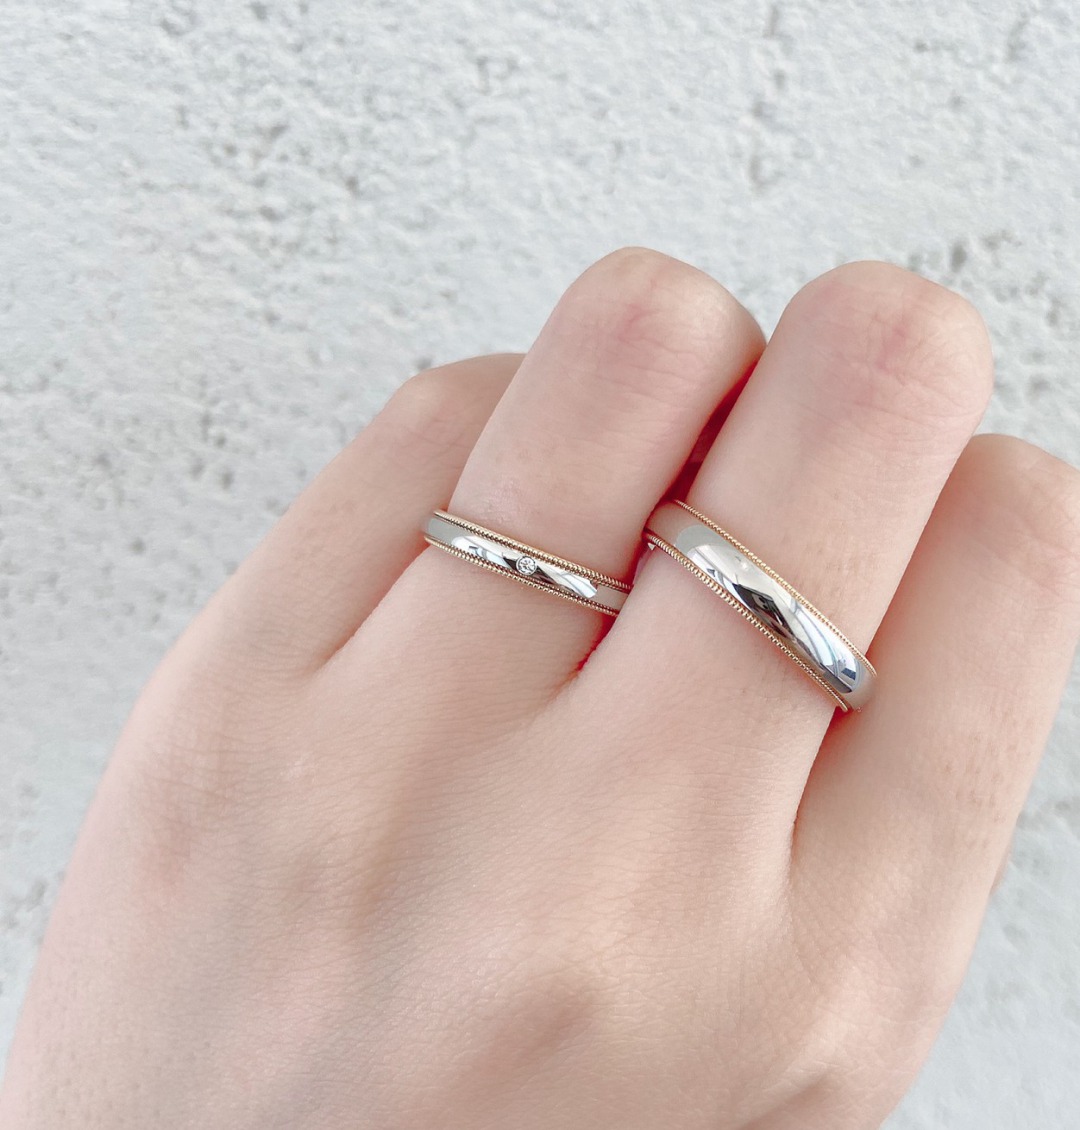 シンプルでお洒落なミルグレインが美しいアンティーク調の結婚指輪